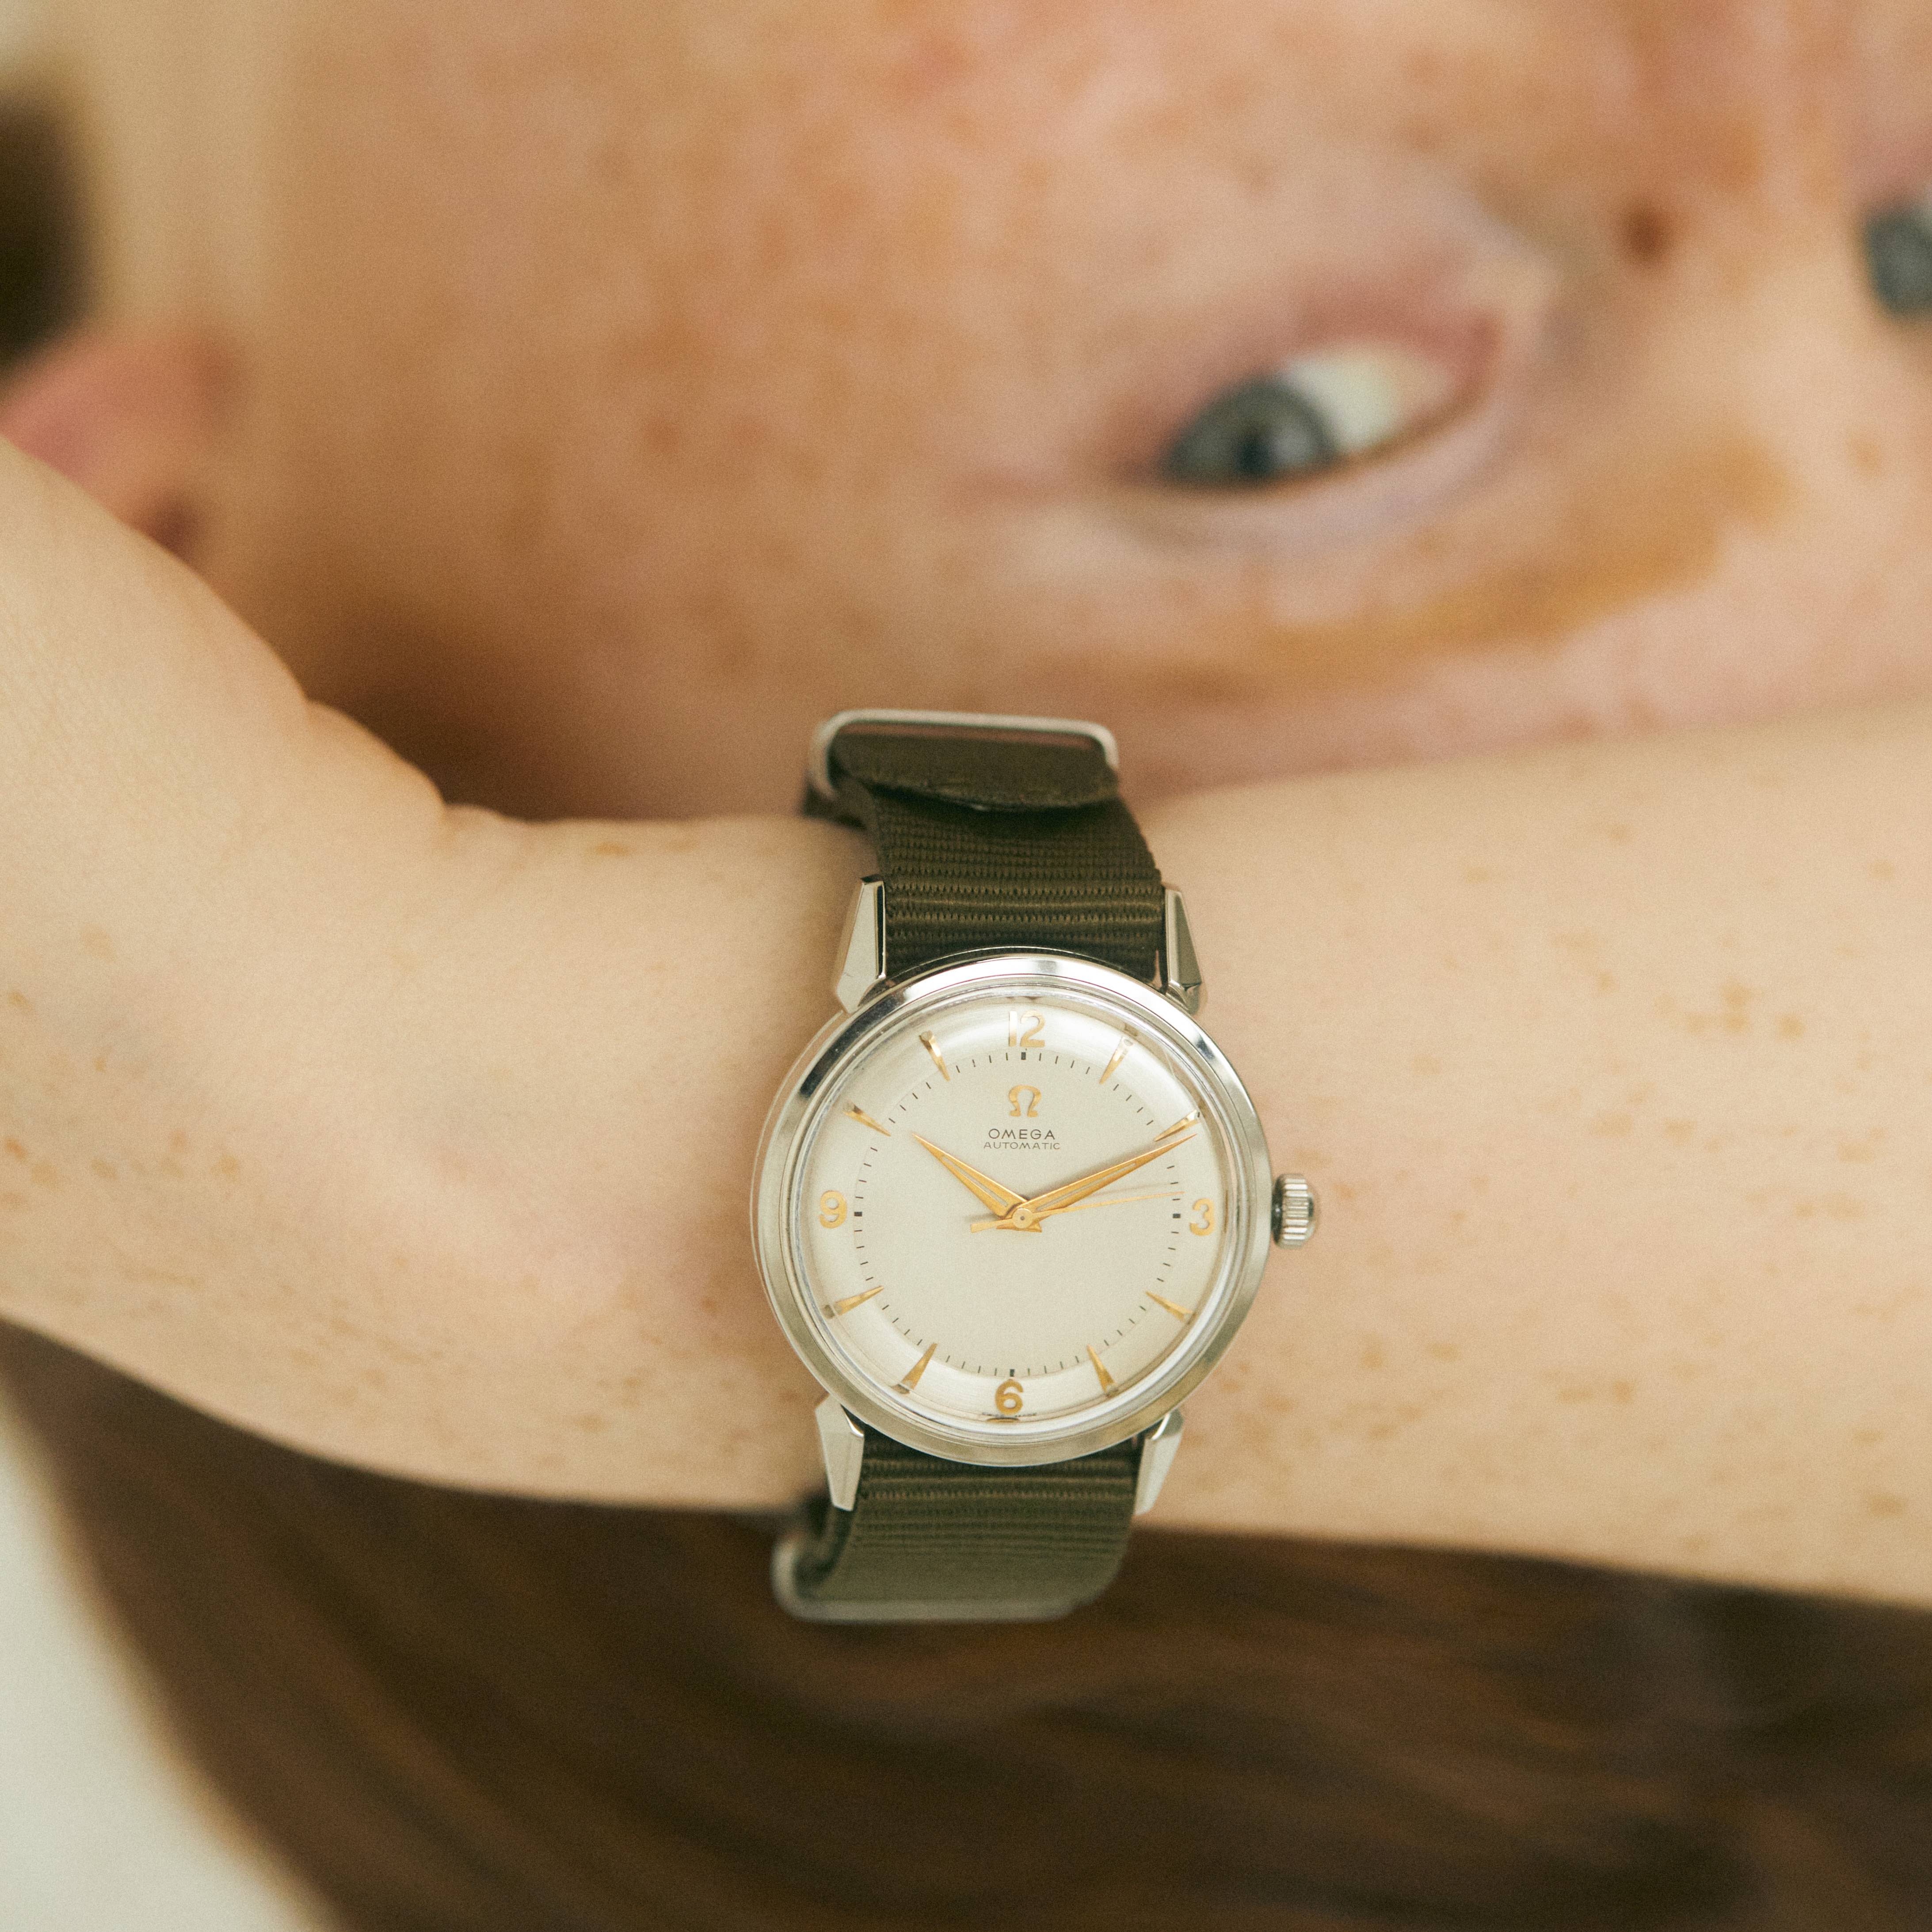 ヴィンテージの《オメガ》で名品時計の真価を知って。【FUDGE GIRLのためのアクセサリークリップス】 アクセサリー ファッション 